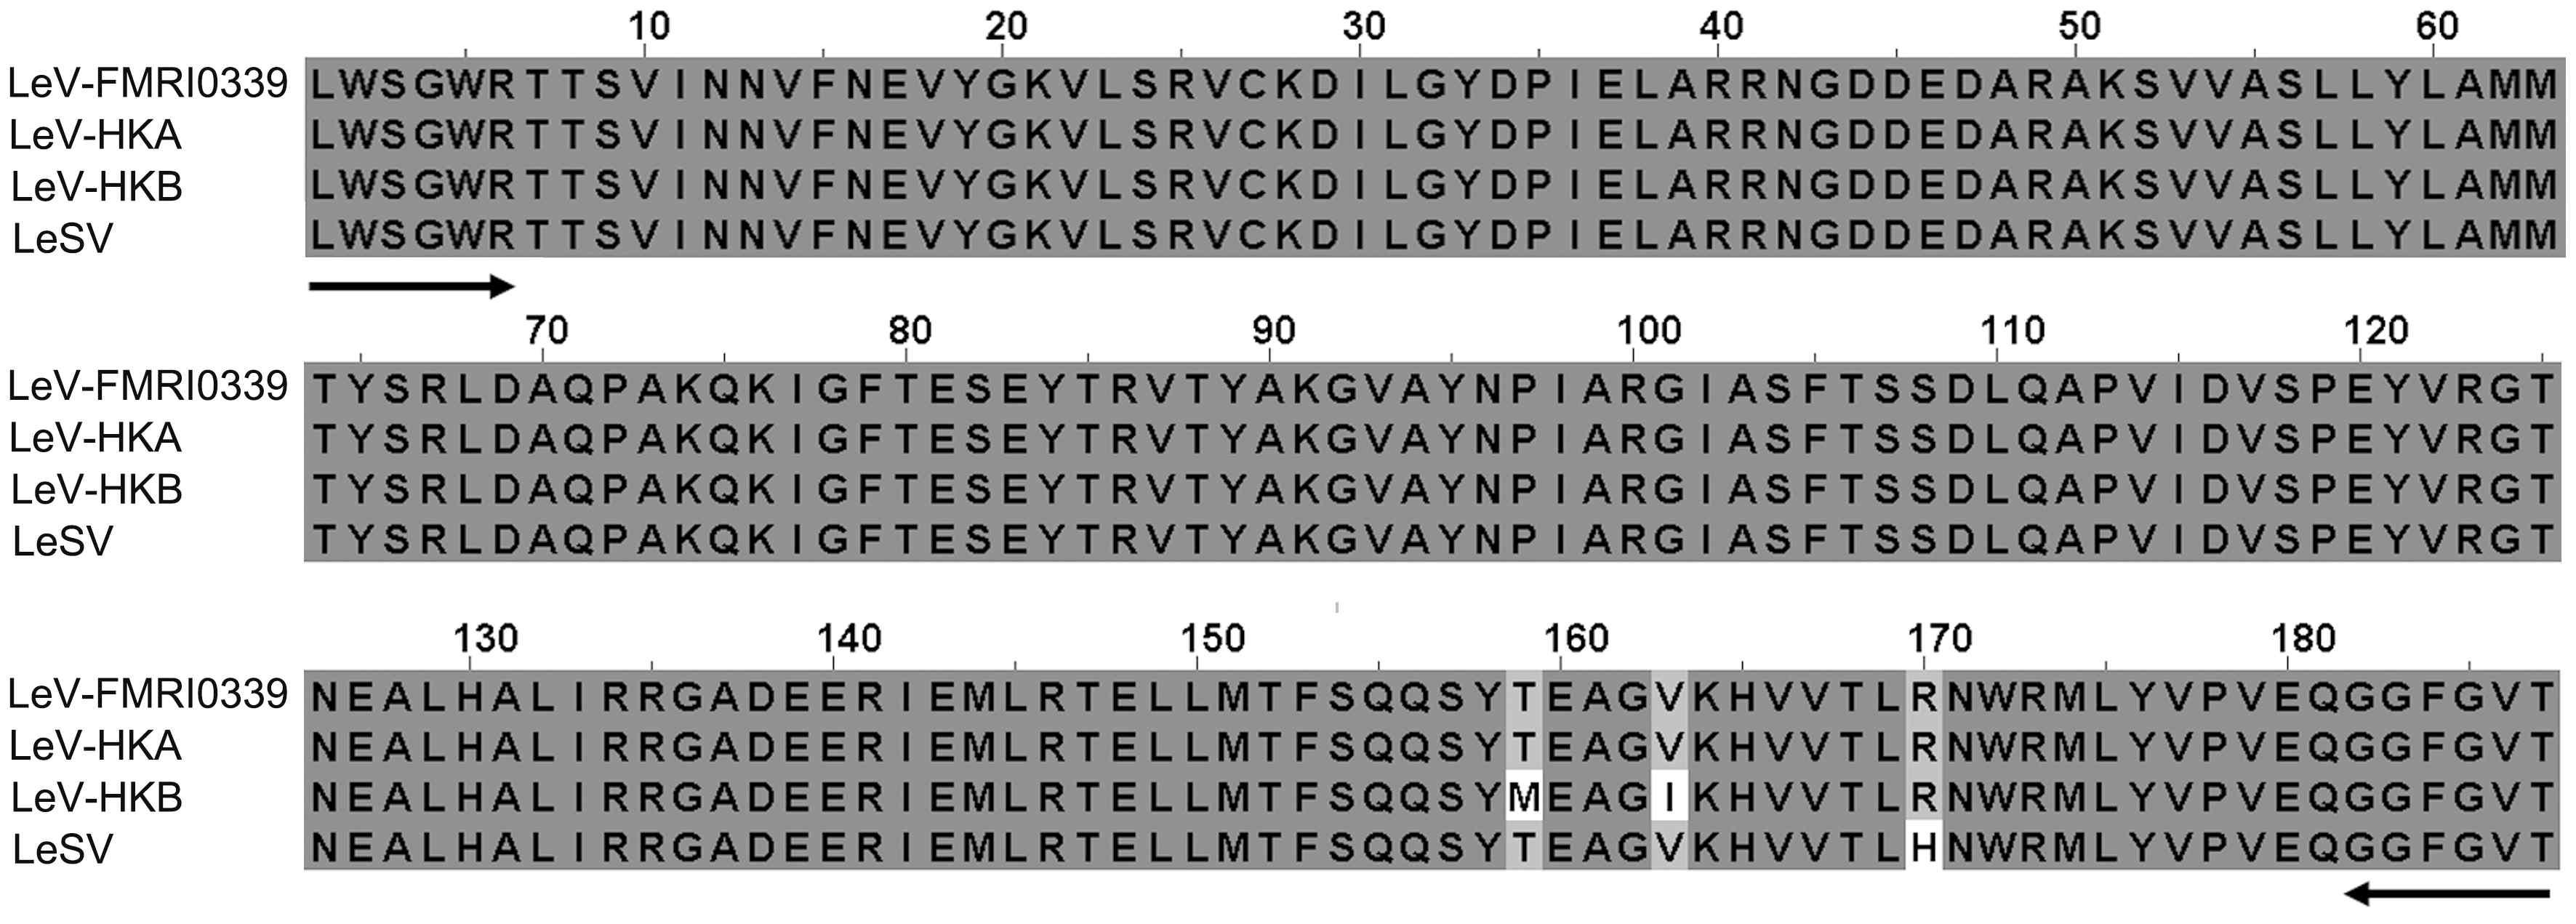 기존 보고된 표고버섯바이러스들의 RNA-dependant RNA polymerase (RDRP) proteins 조각과 산조701에 감염된 표고버섯바이러스 LeV-FMRI0339의 alignment 분석